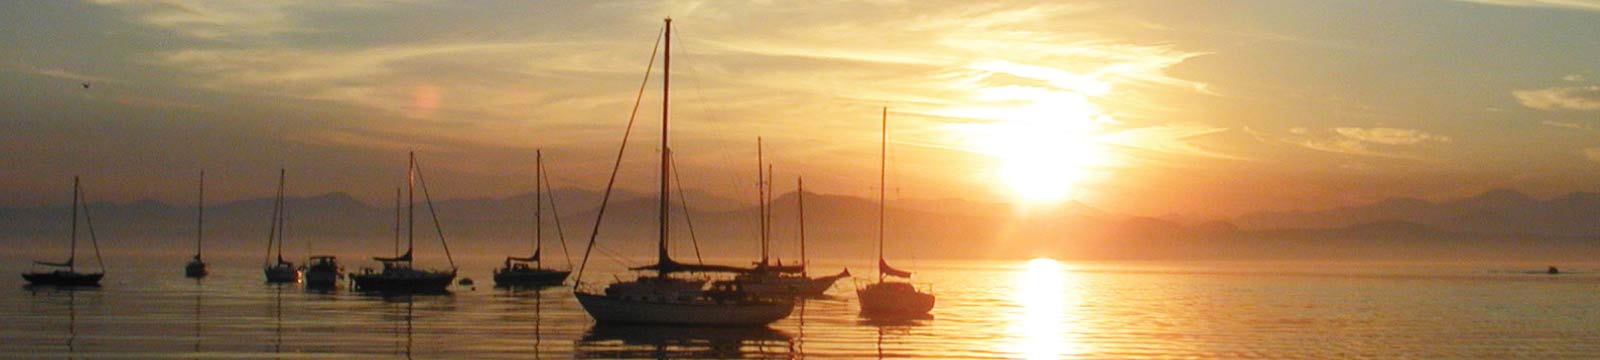 Lake Champlain at Sunset with Sailboats